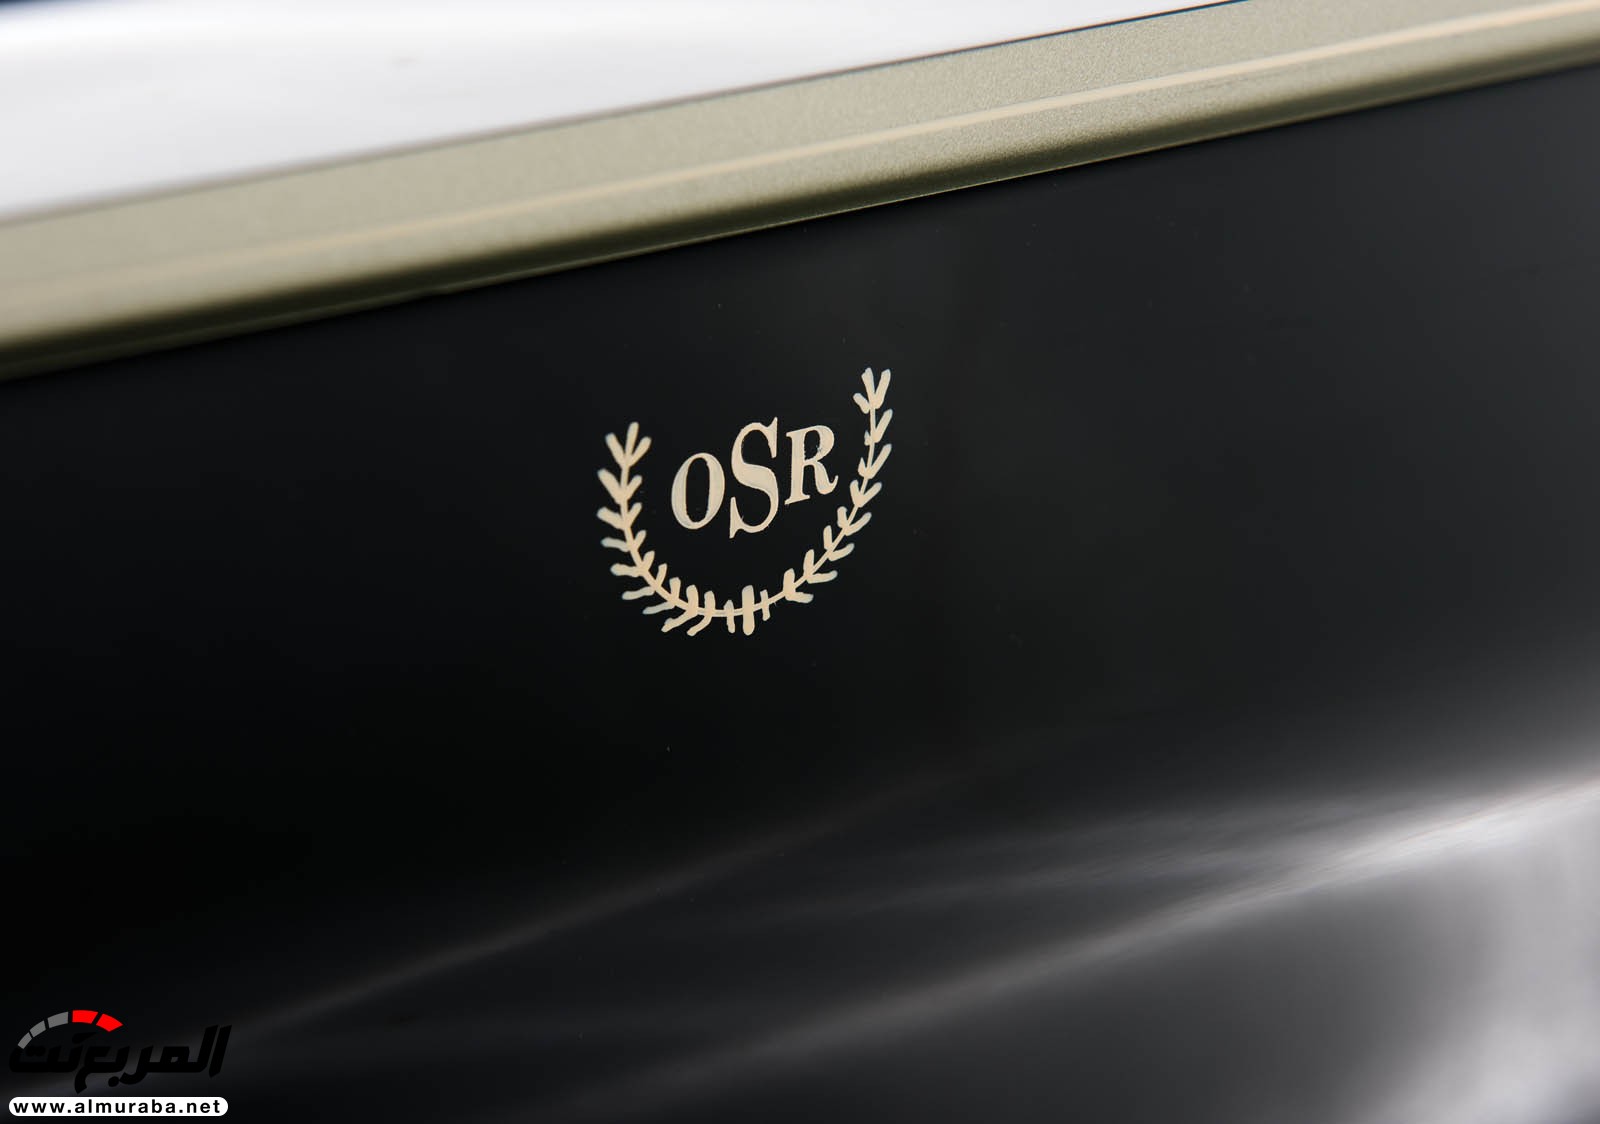 "رولز رويس" سيلفر كلاود 1959 ذات هيكلة الواجن تتوجه لتباع في مزاد عالمي Rolls-Royce Silver Cloud 71